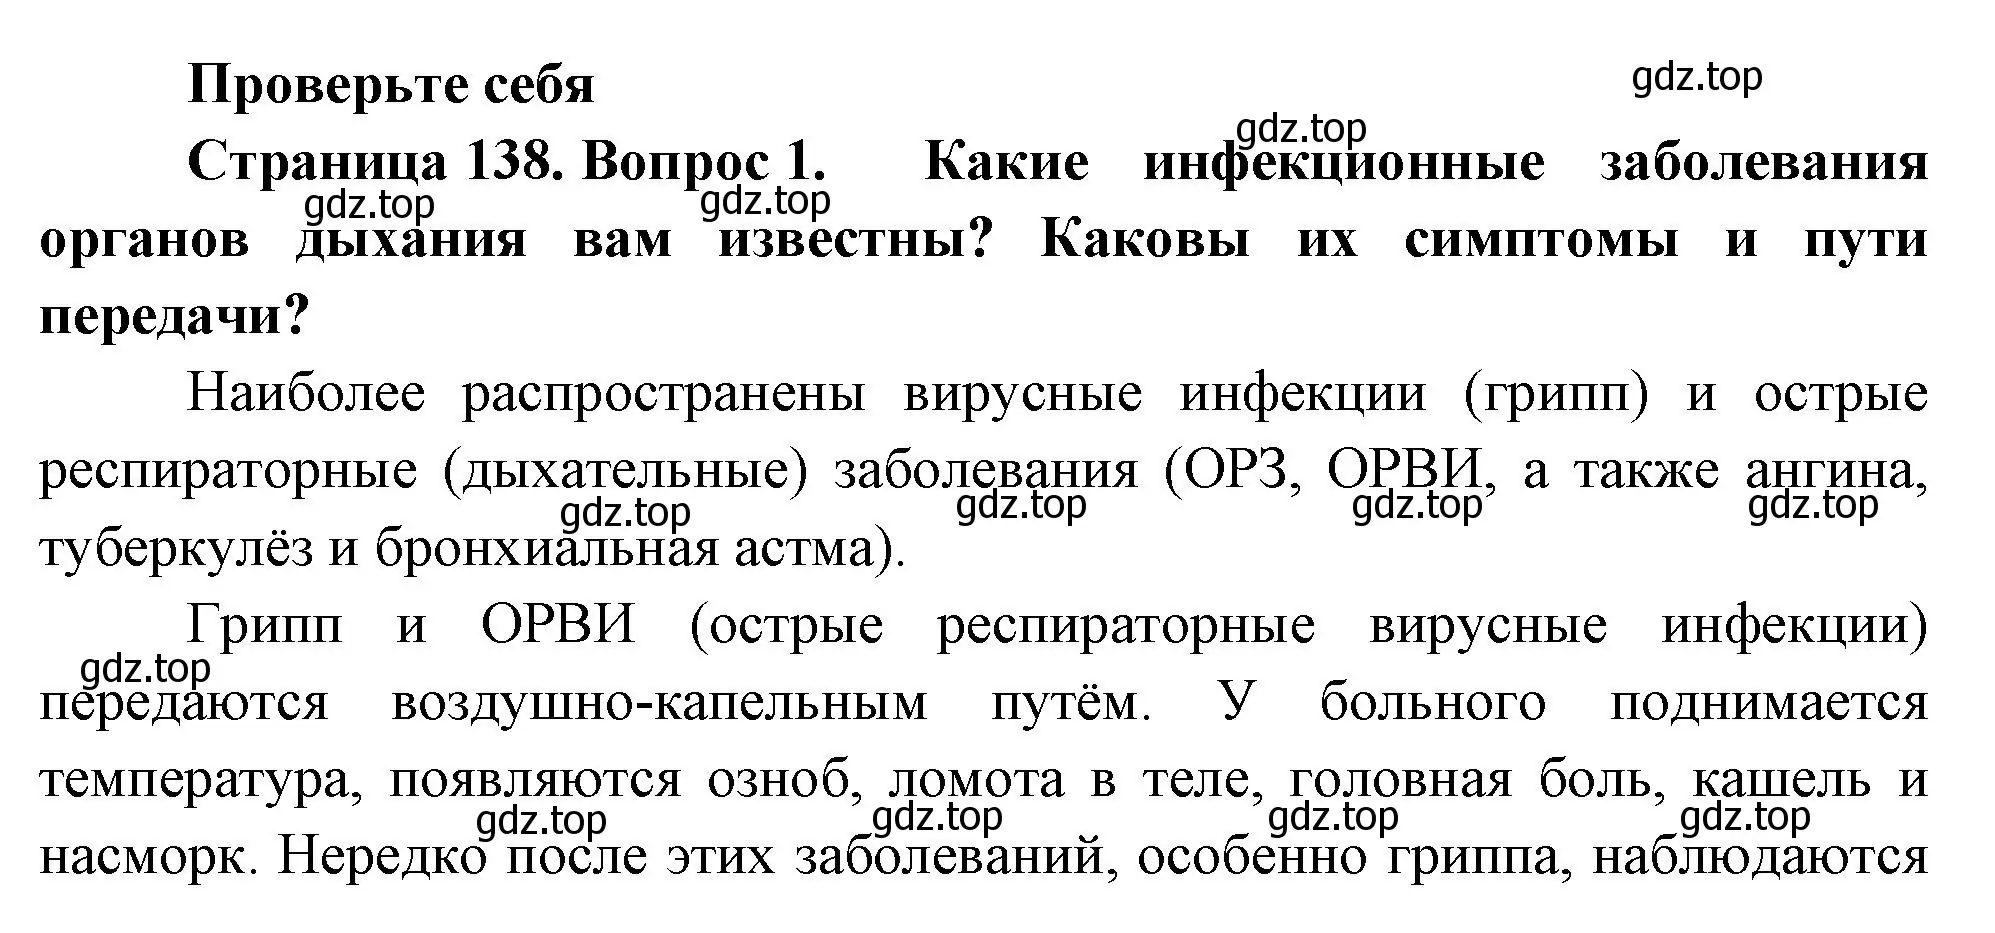 Решение номер 1 (страница 138) гдз по биологии 9 класс Пасечник, Каменский, учебник